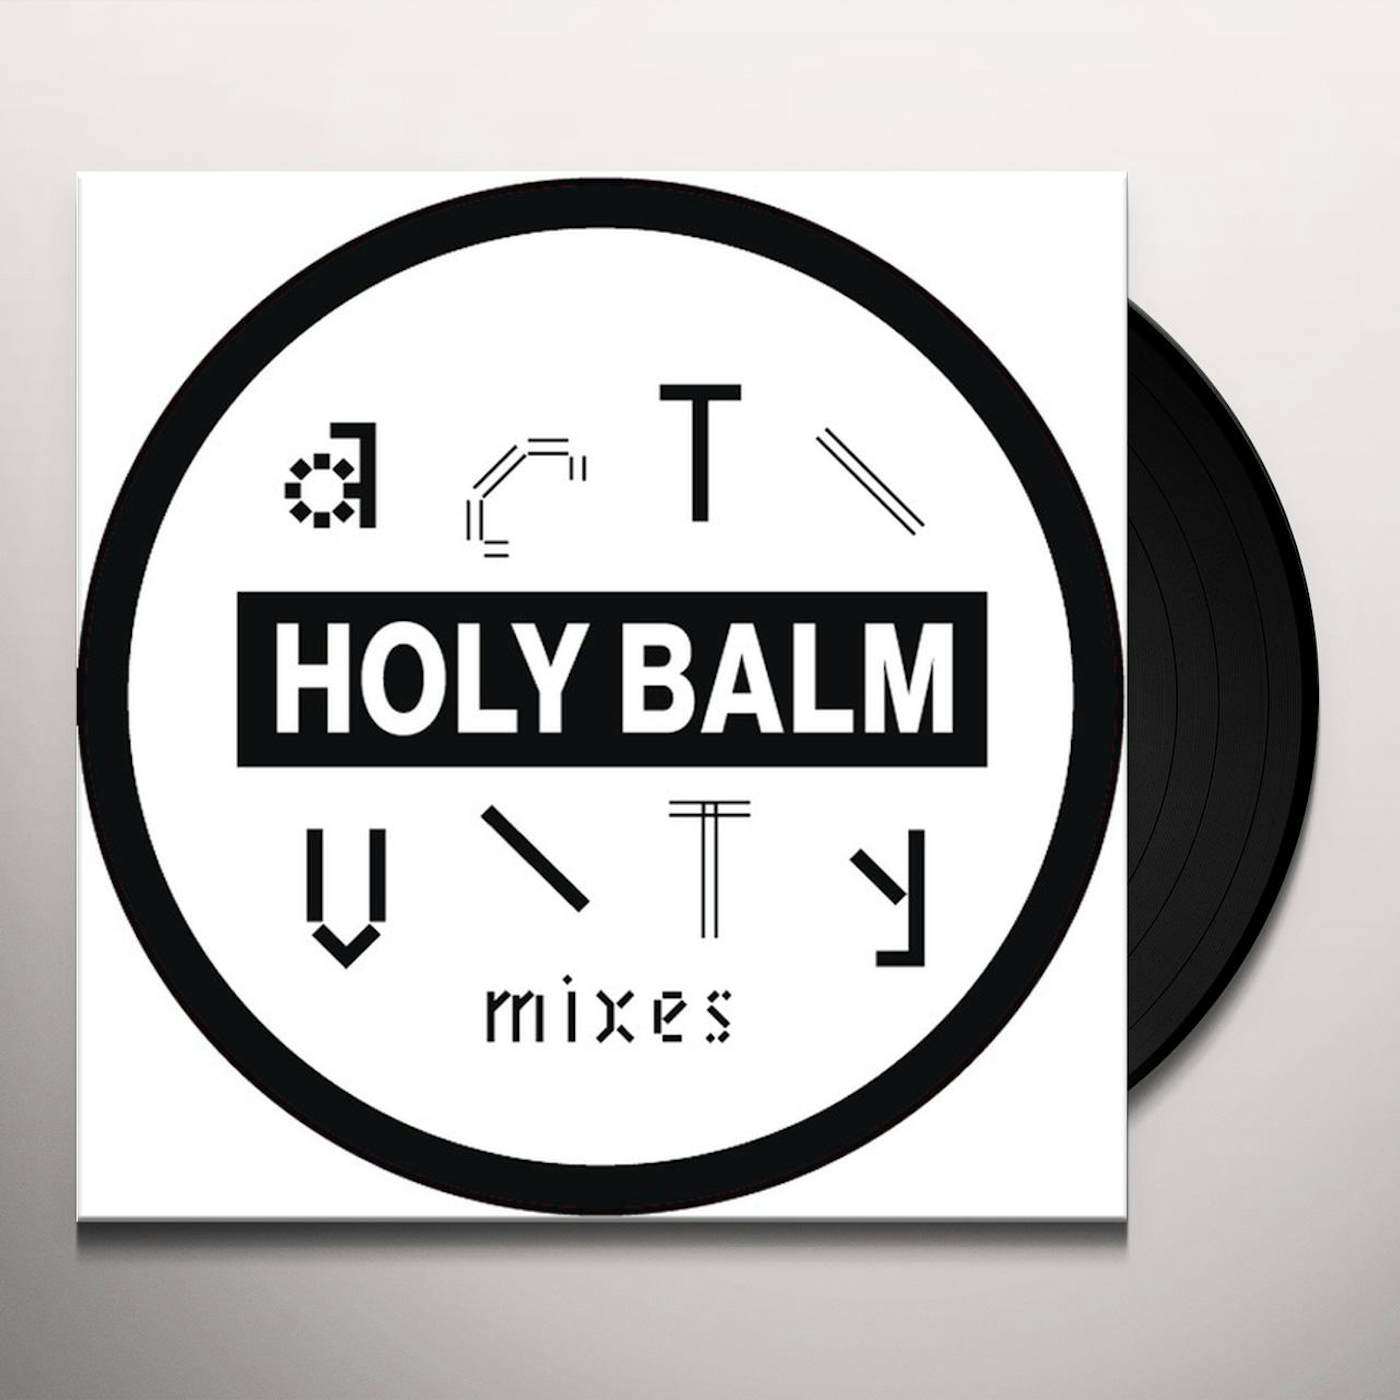 Holy Balm Activity Mixes Vinyl Record